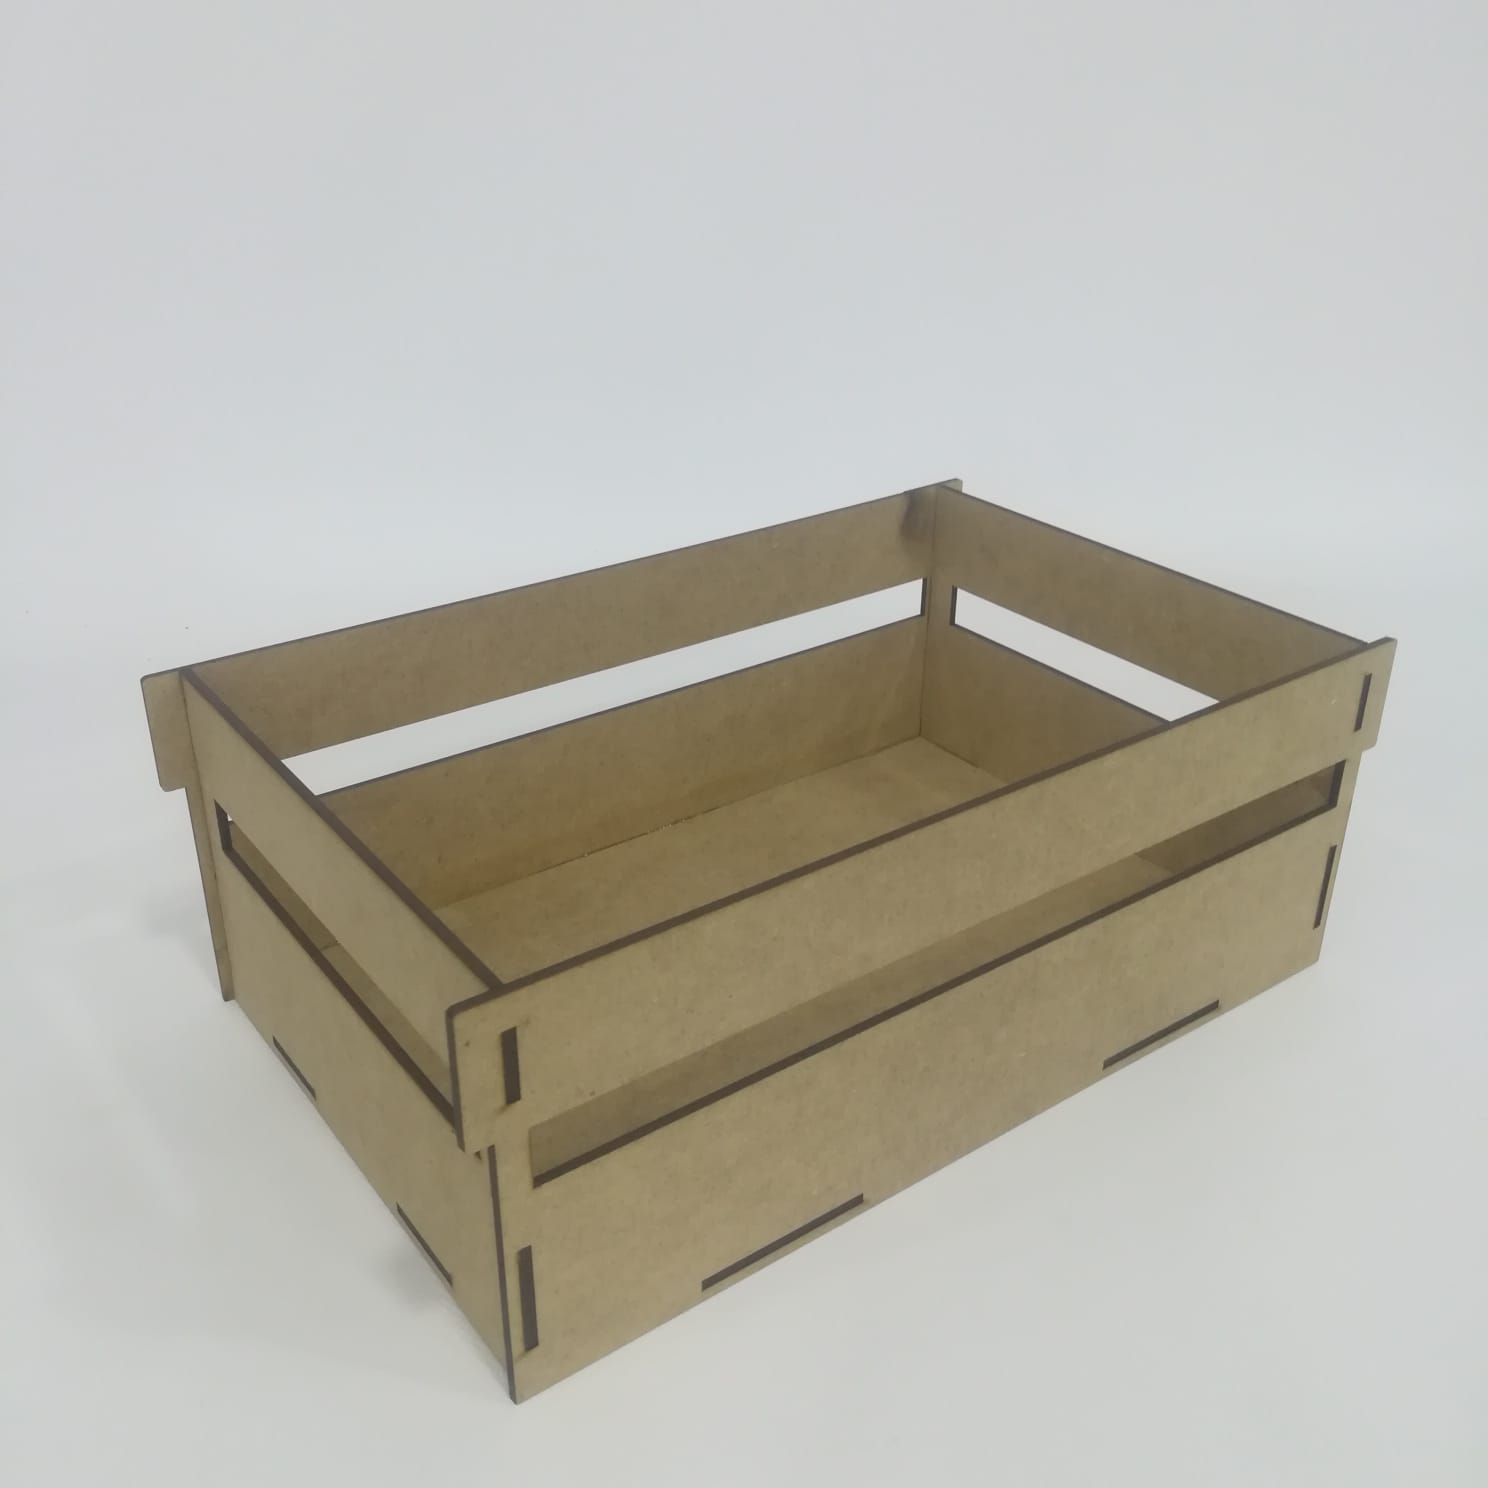 Caja de madera modelo fruta - La Marquesita - Manualidades en madera -  Tienda de manualidades